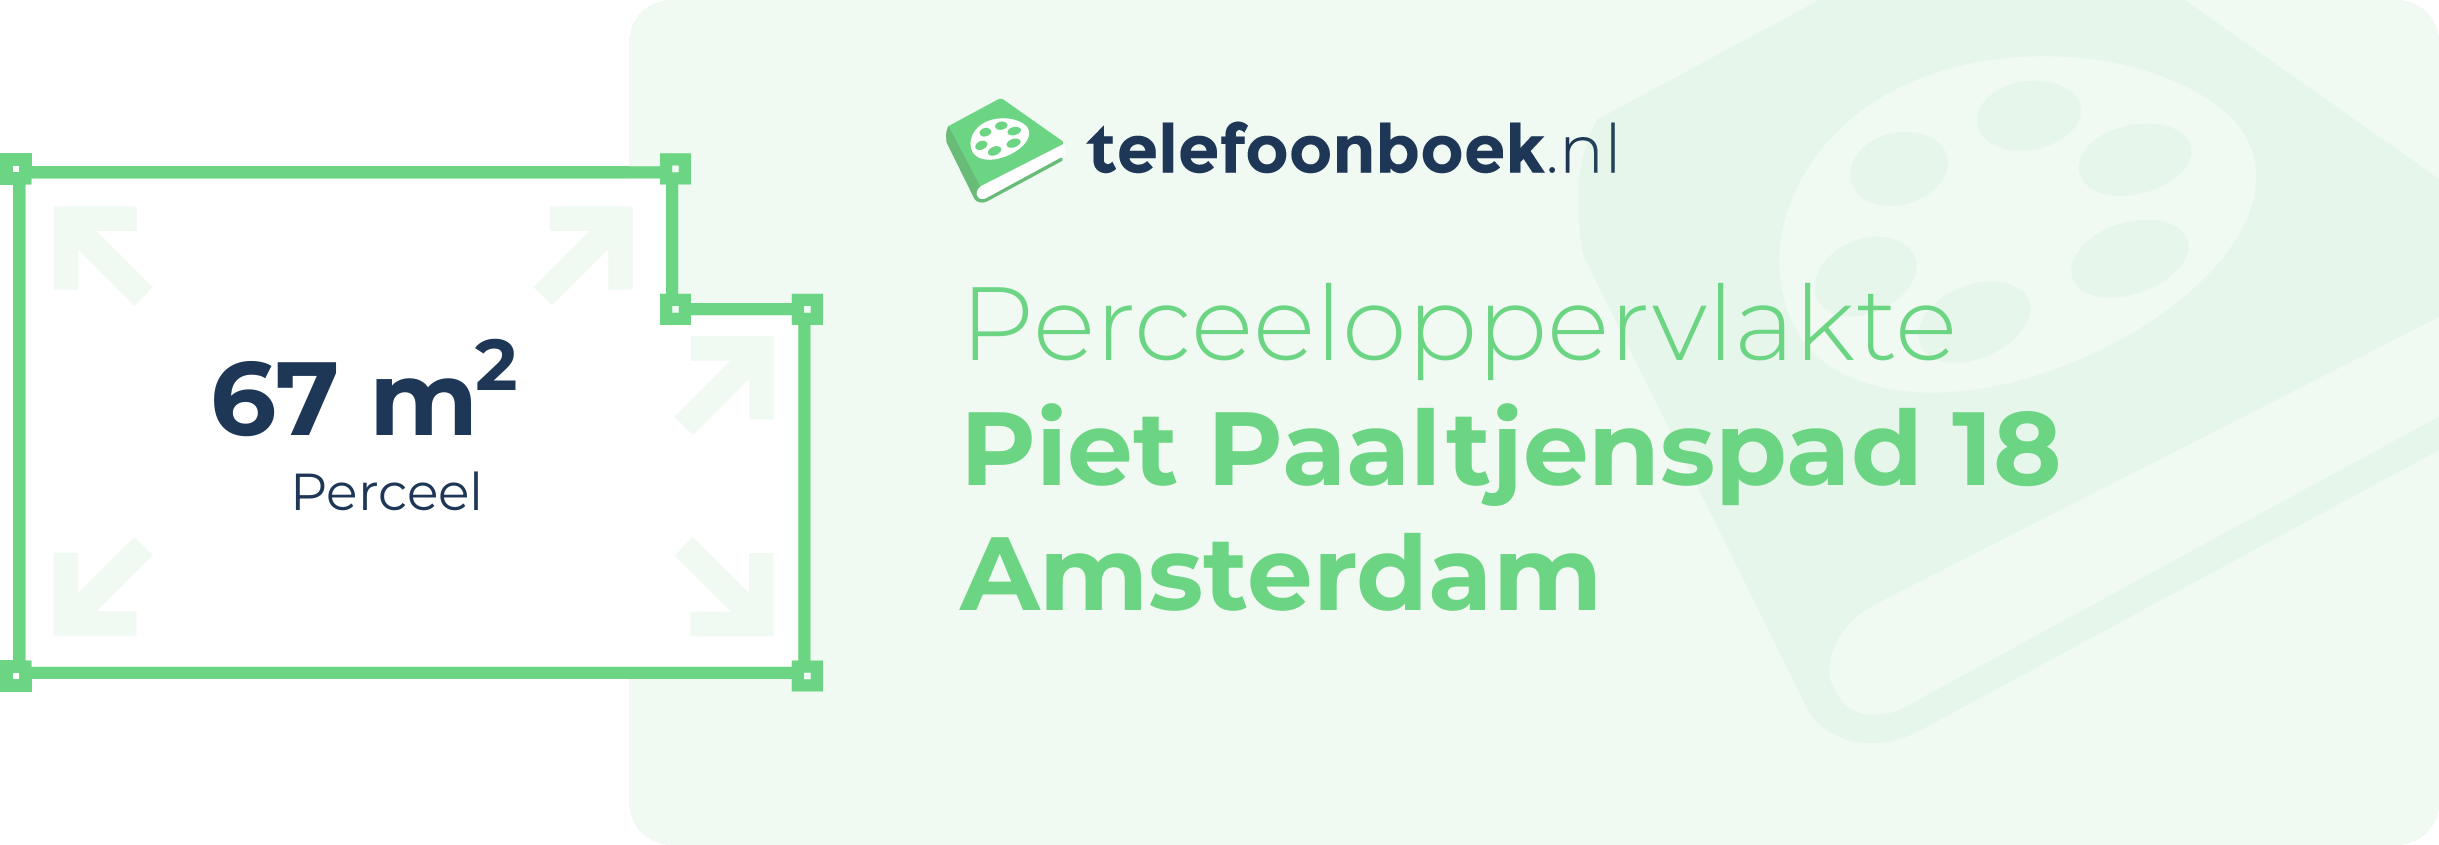 Perceeloppervlakte Piet Paaltjenspad 18 Amsterdam